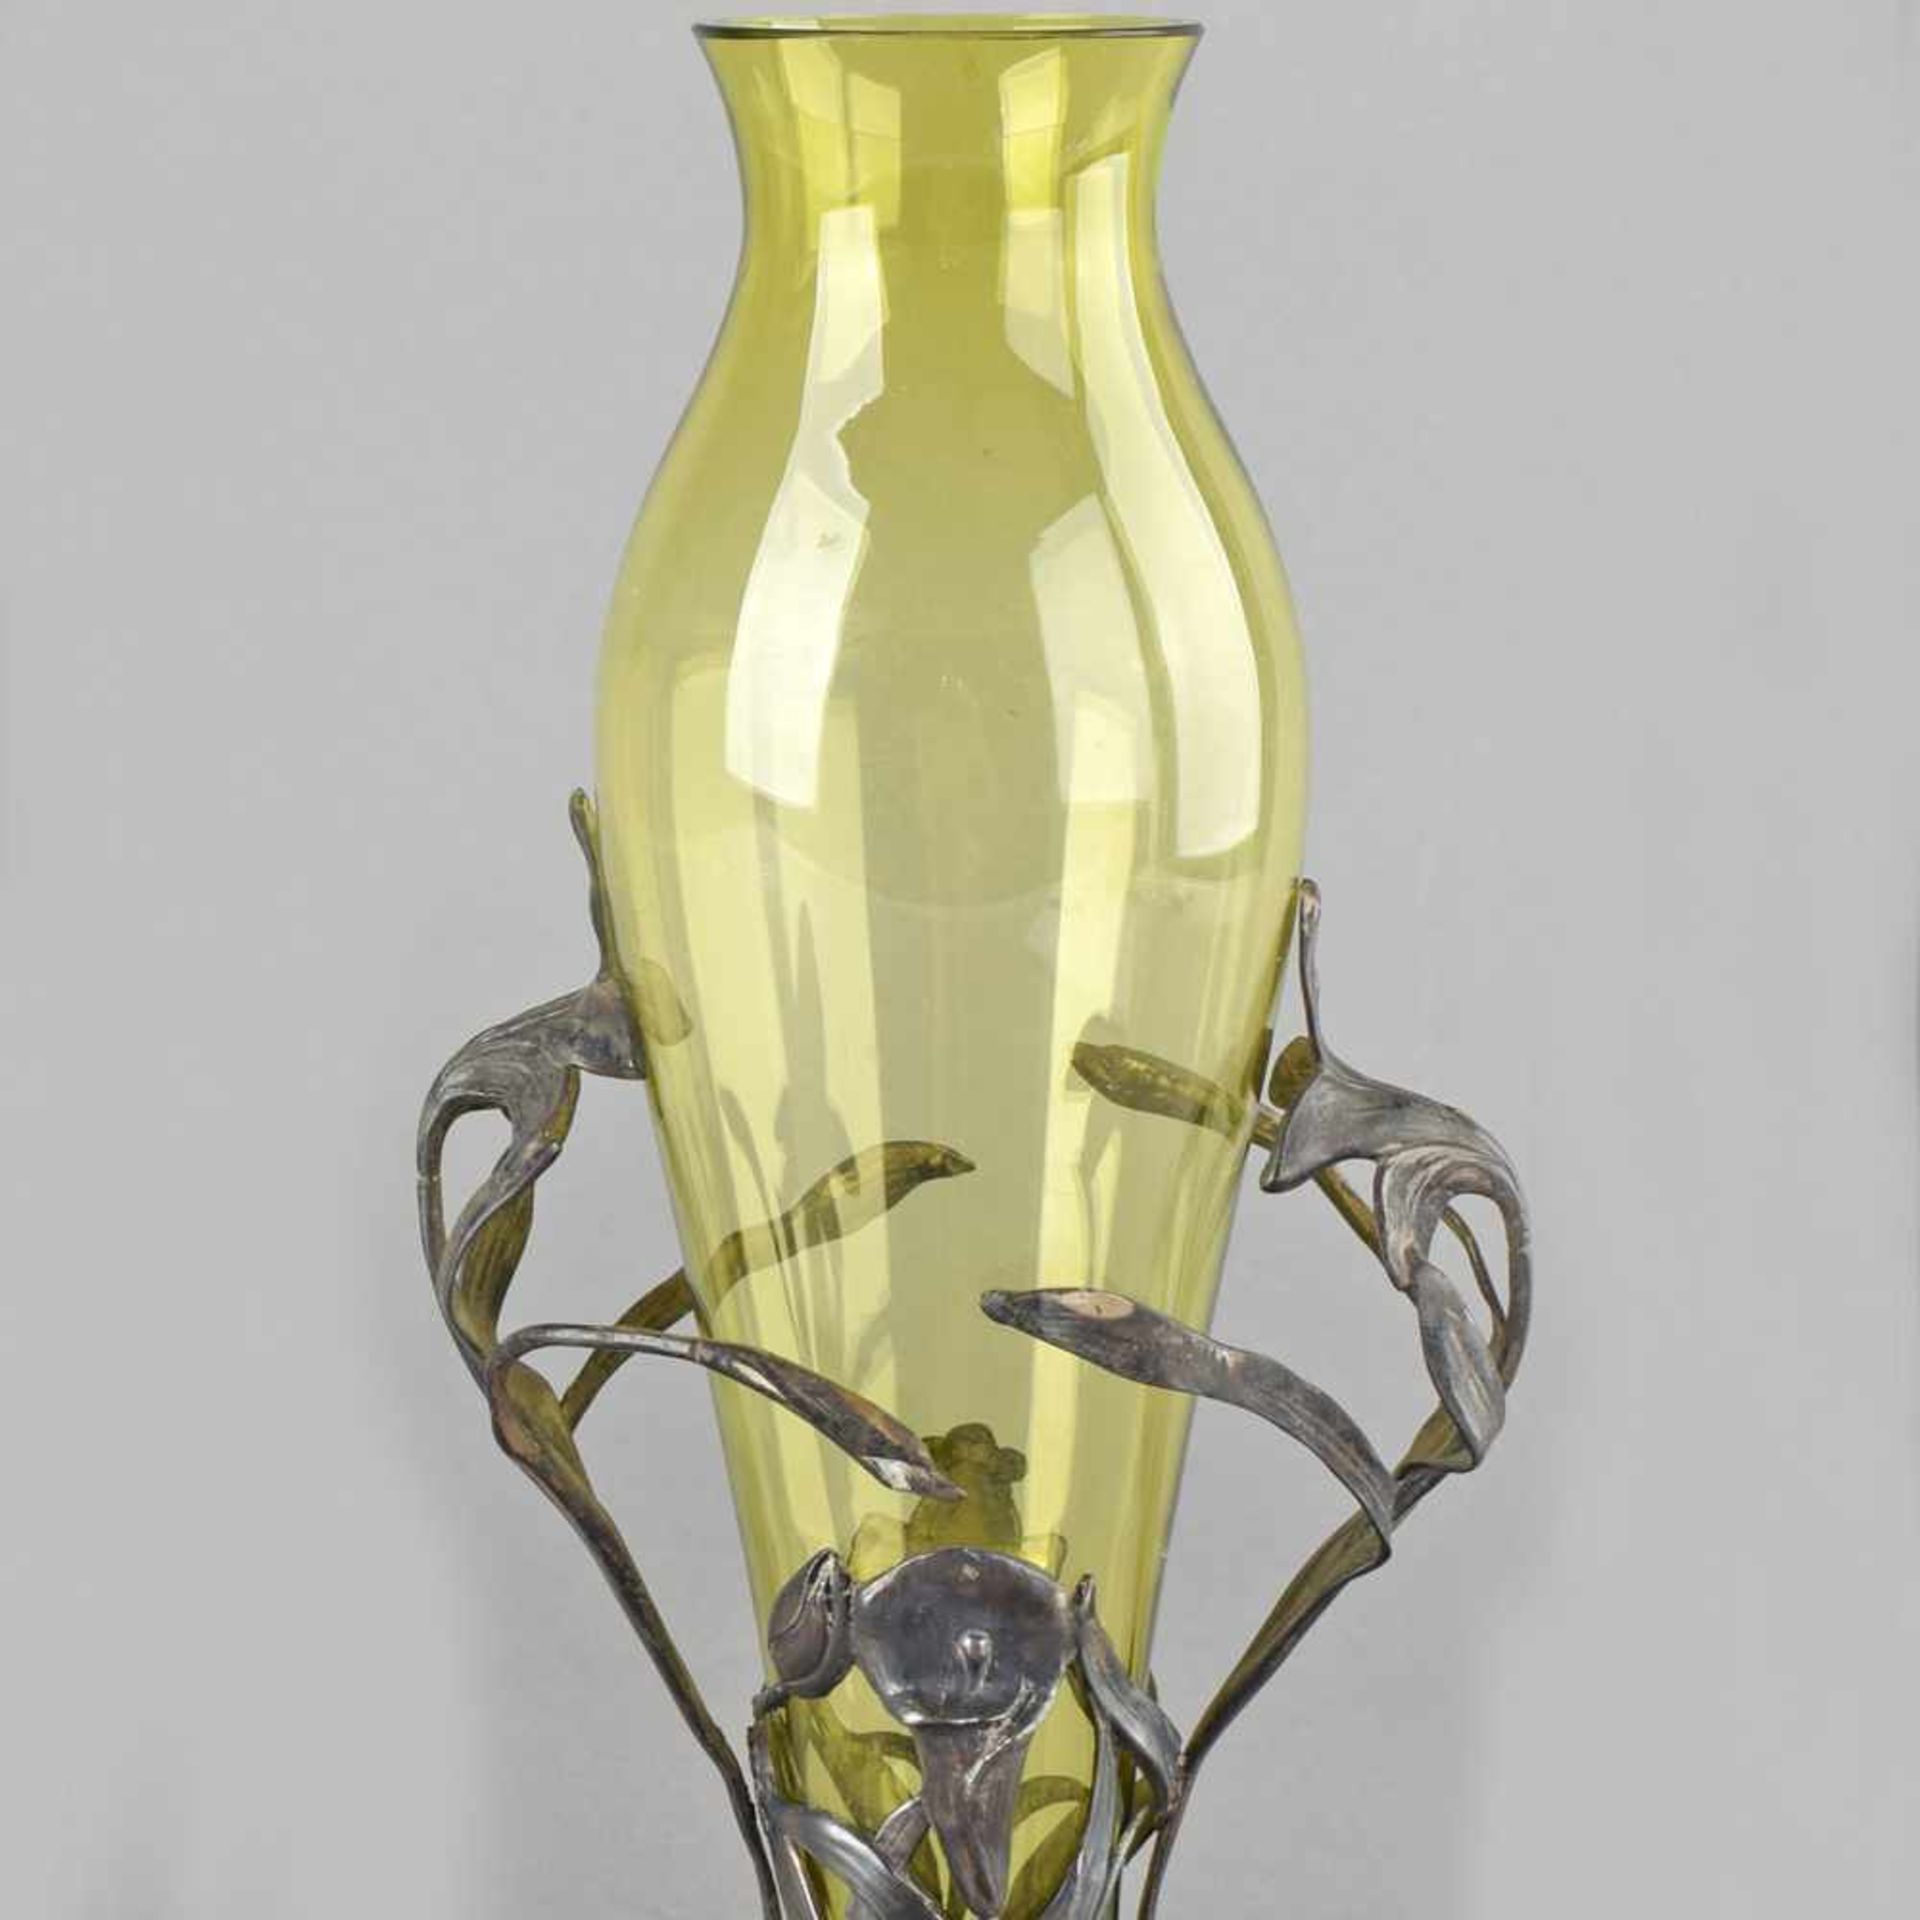 Jugendstil-Vase mit grünem Glaseinsatz, filigrane Einfassung durchbrochen gearbeitet, florales